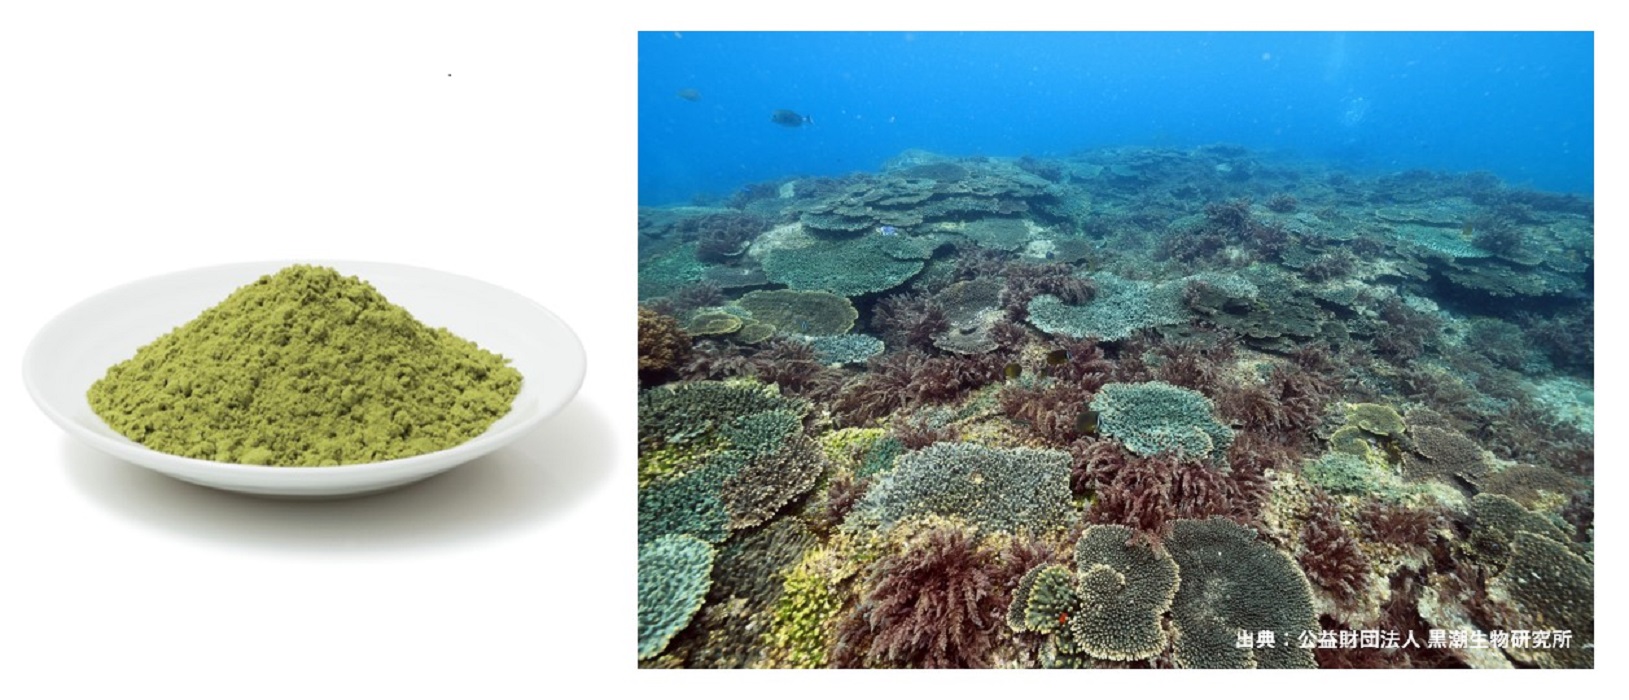 左・ユーグレナ粉末（イメージ）、右・カギケノリ（赤紫色の海藻、イメージ）